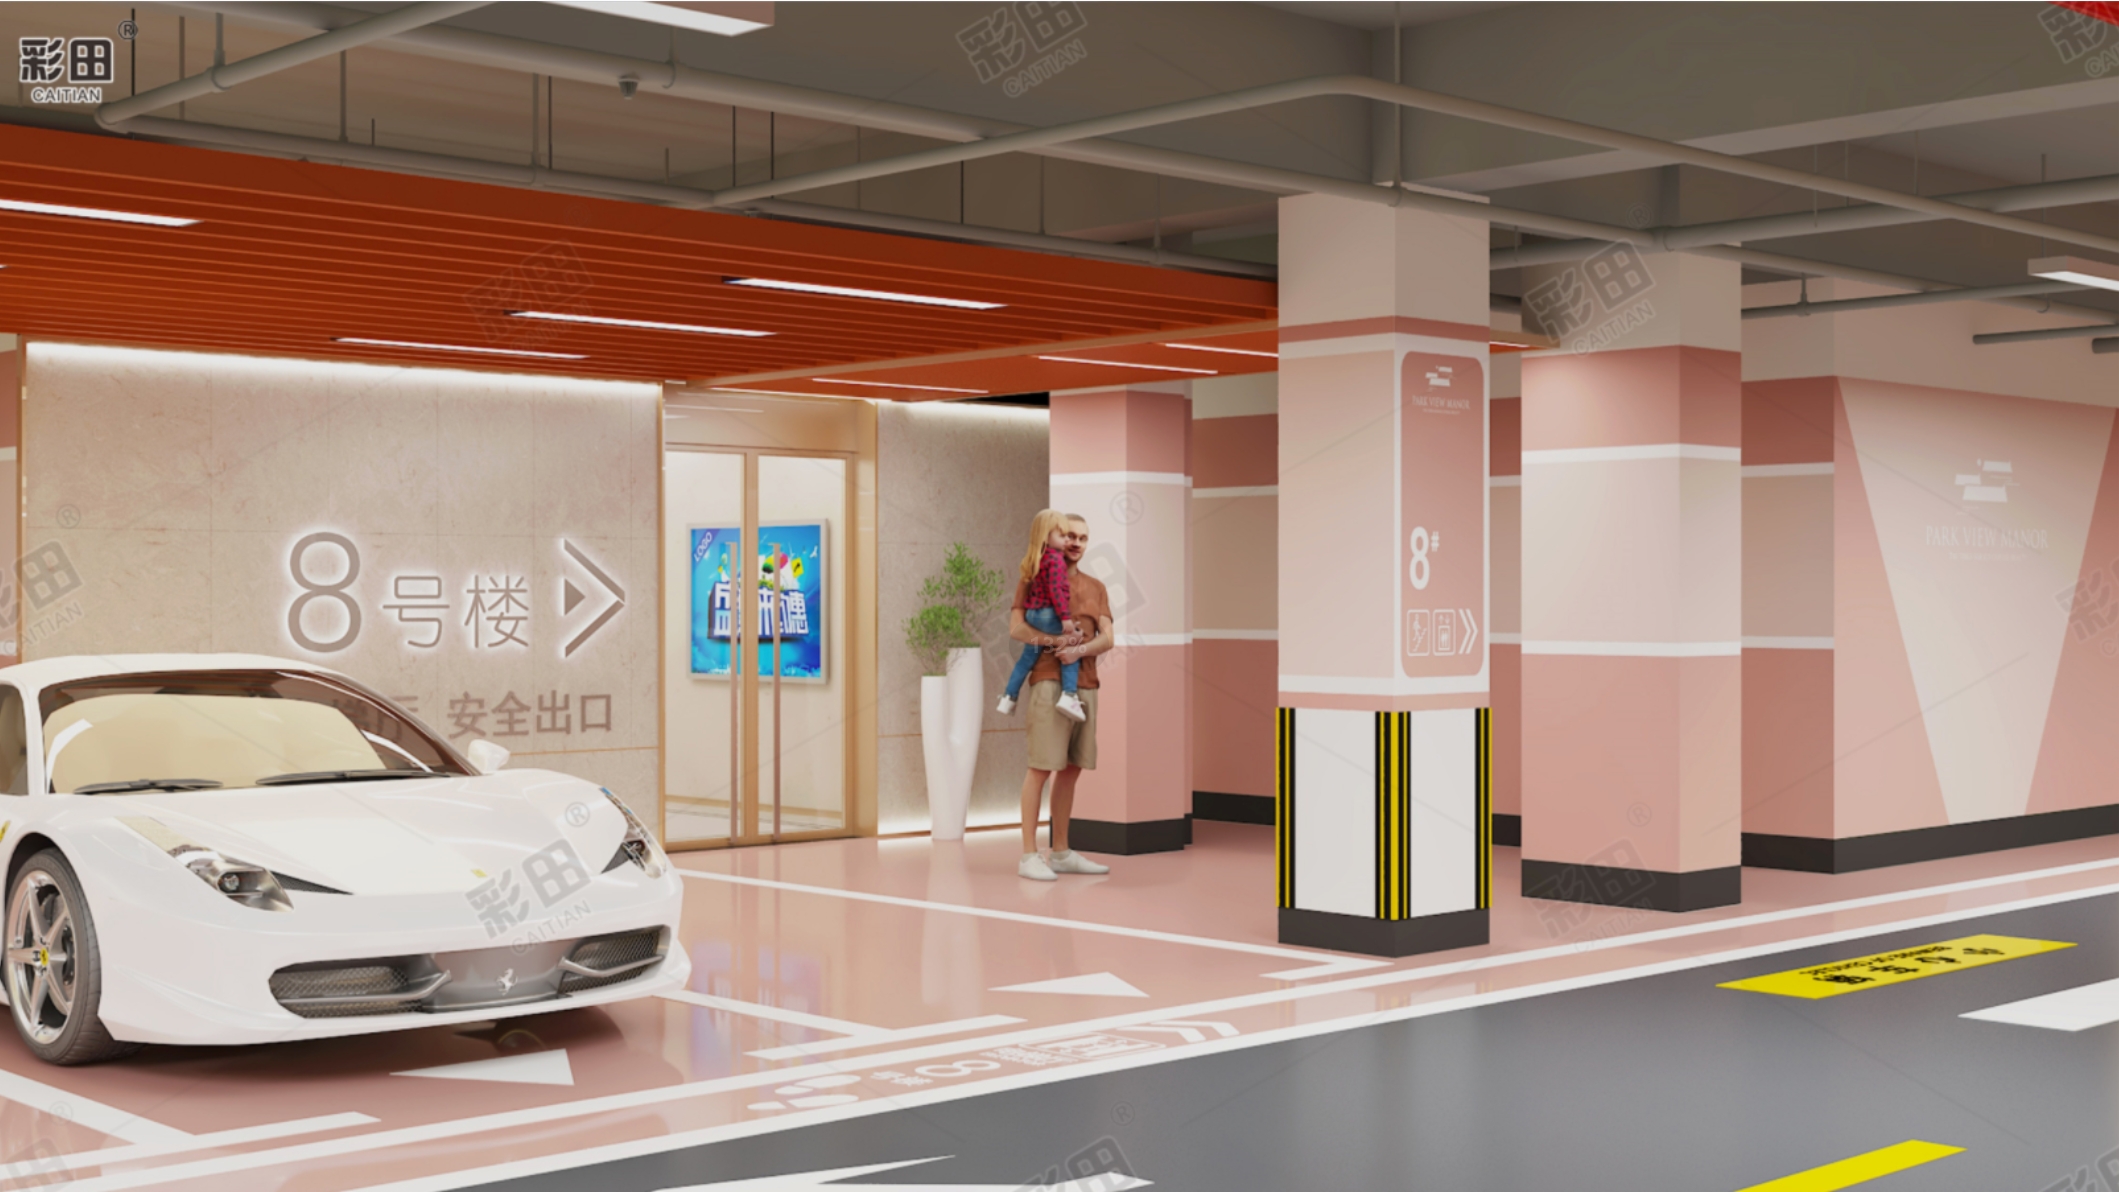 地下停车场3D立体化效果图展示